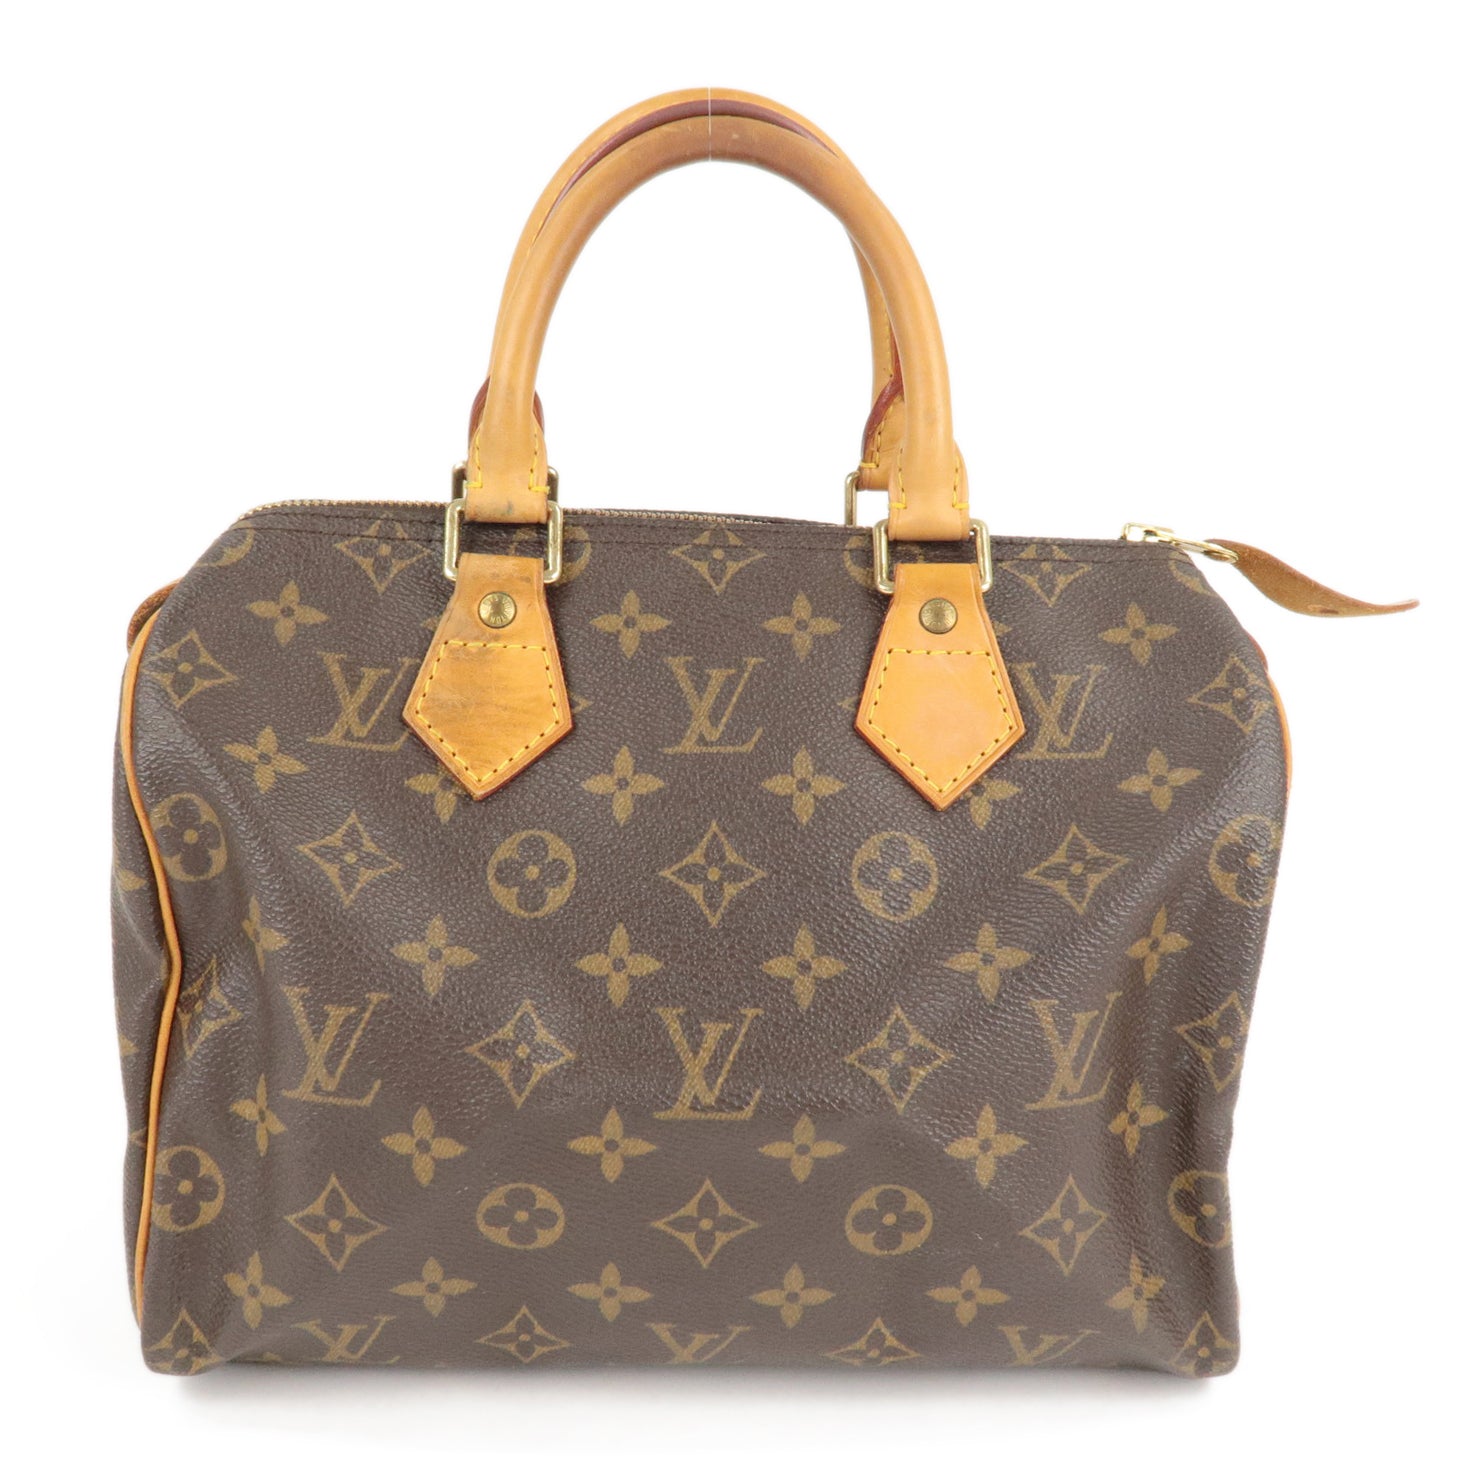 Louis Vuitton Keepall Bandoulière 25 Bag Monogram Canvas Leather